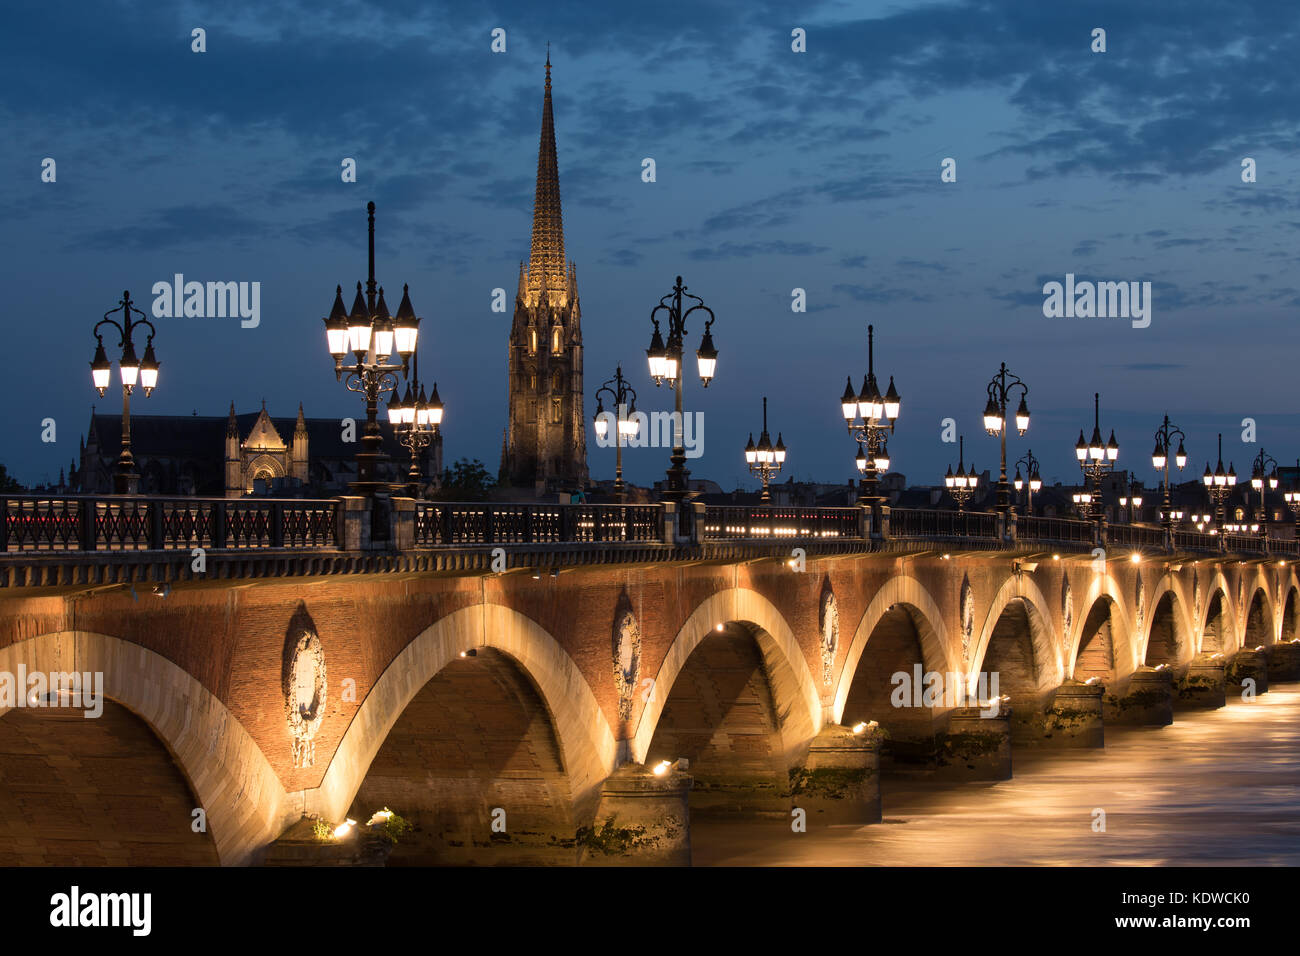 Pont de Pierre spanning the River Garonne at dusk with Basilique Saint-Michel beyond, Bordeaux, Aquitaine, France Stock Photo